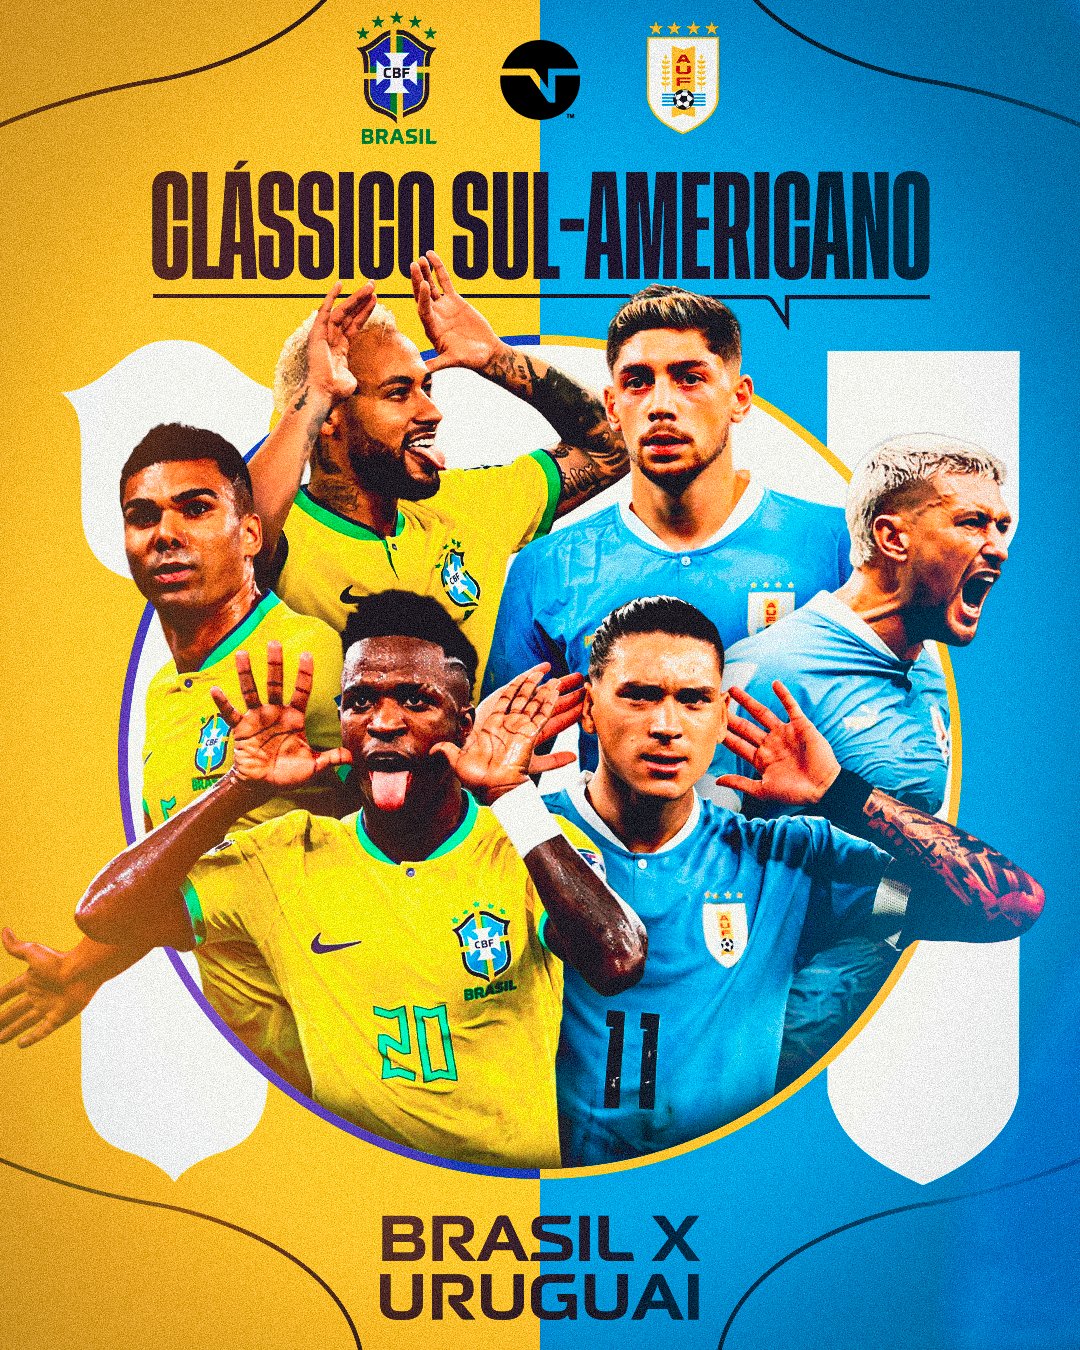 TNT Sports BR on X: ALERTA DE JOGO ABSURDO NAS ELIMINATÓRIAS! 🚨😱🔥  DECIDIRAM 'SÓ' FINAL DE COPA DO MUNDO JÁ A nossa #SeleçãoBrasileira  enfrenta o Uruguai! 🇺🇾🇧🇷 E aí, qual o palpite